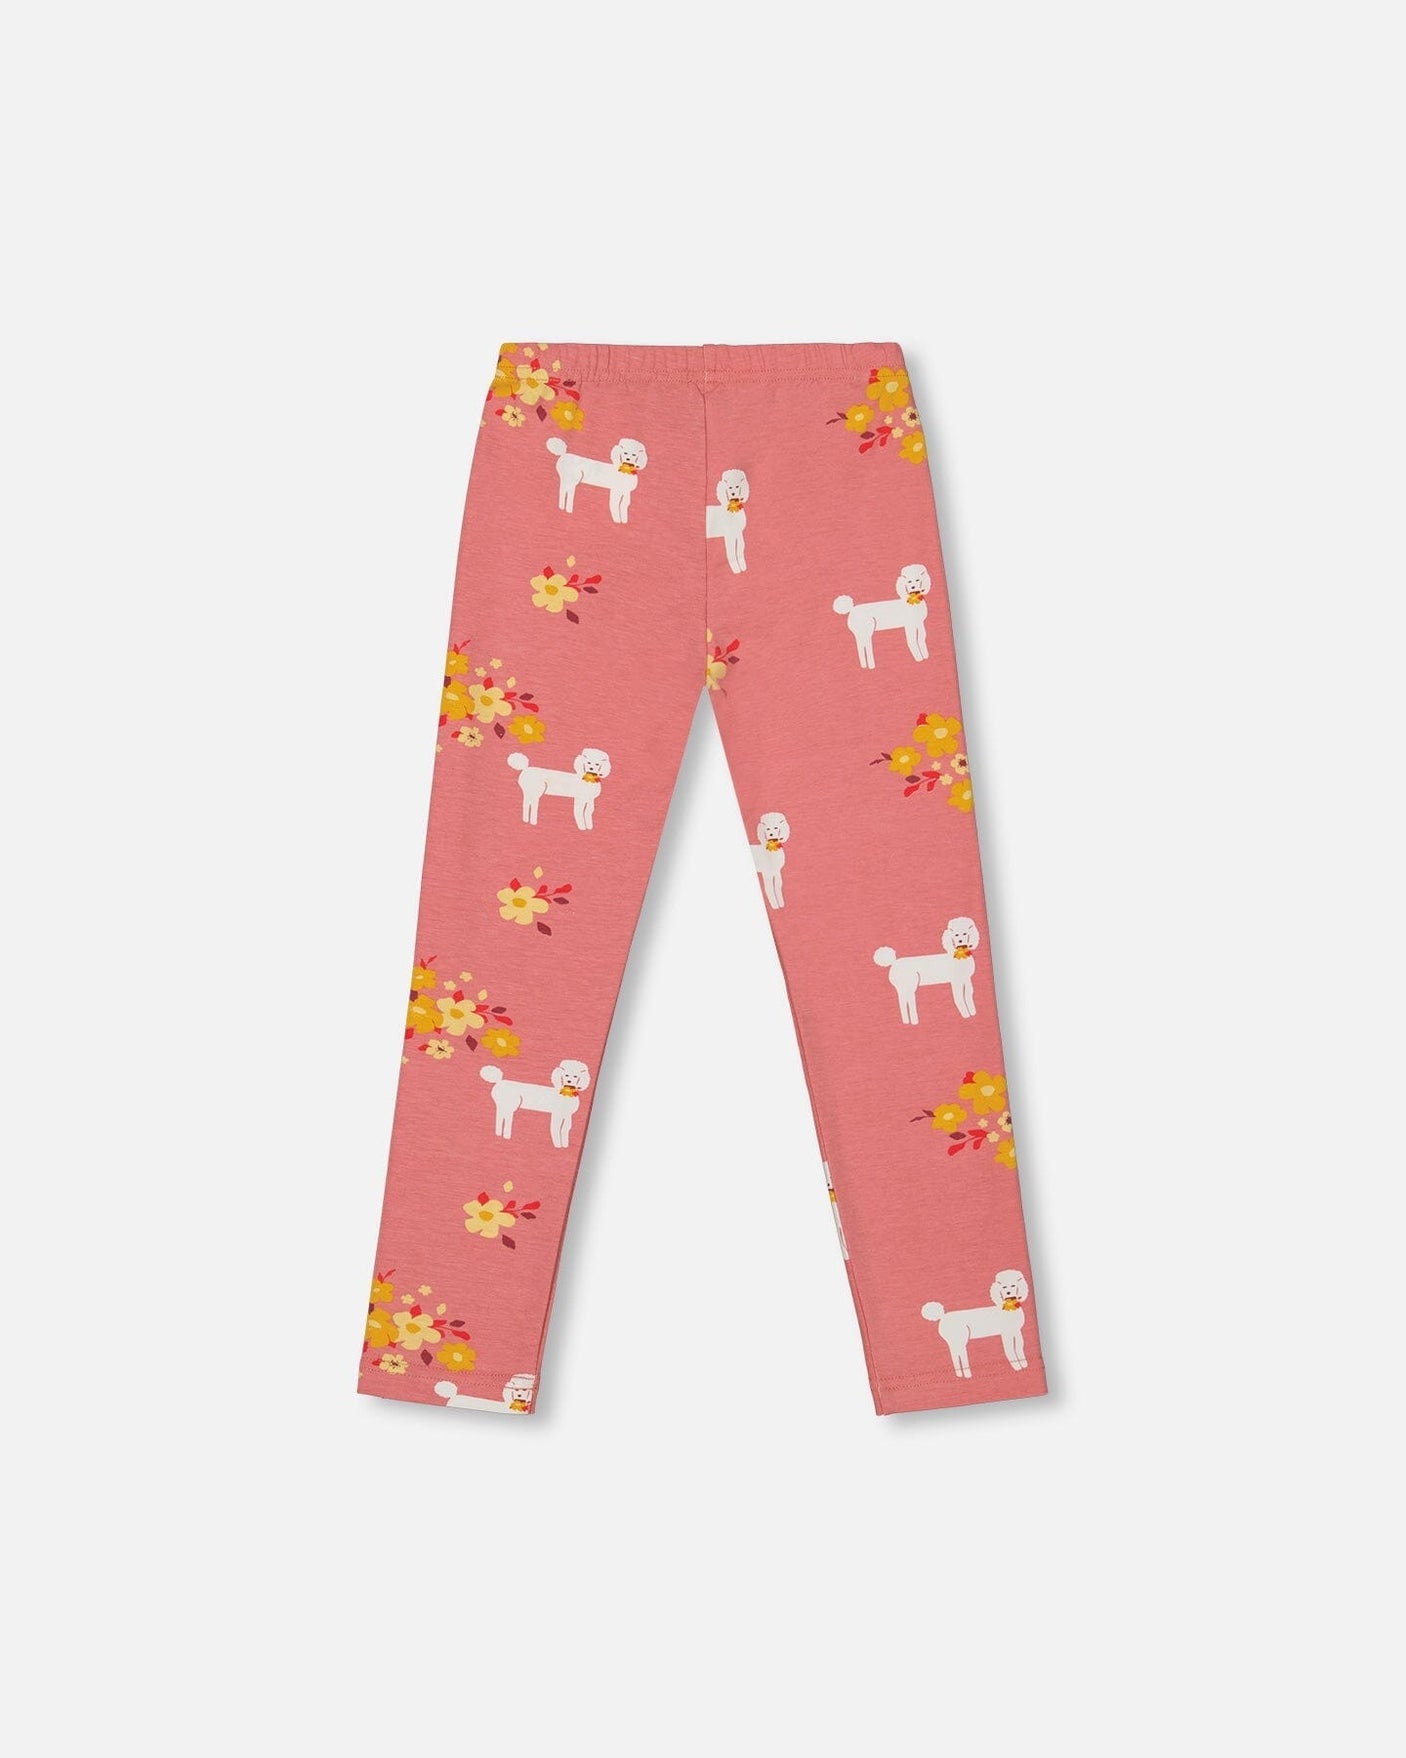 Printed Leggings Pink Poodle-2